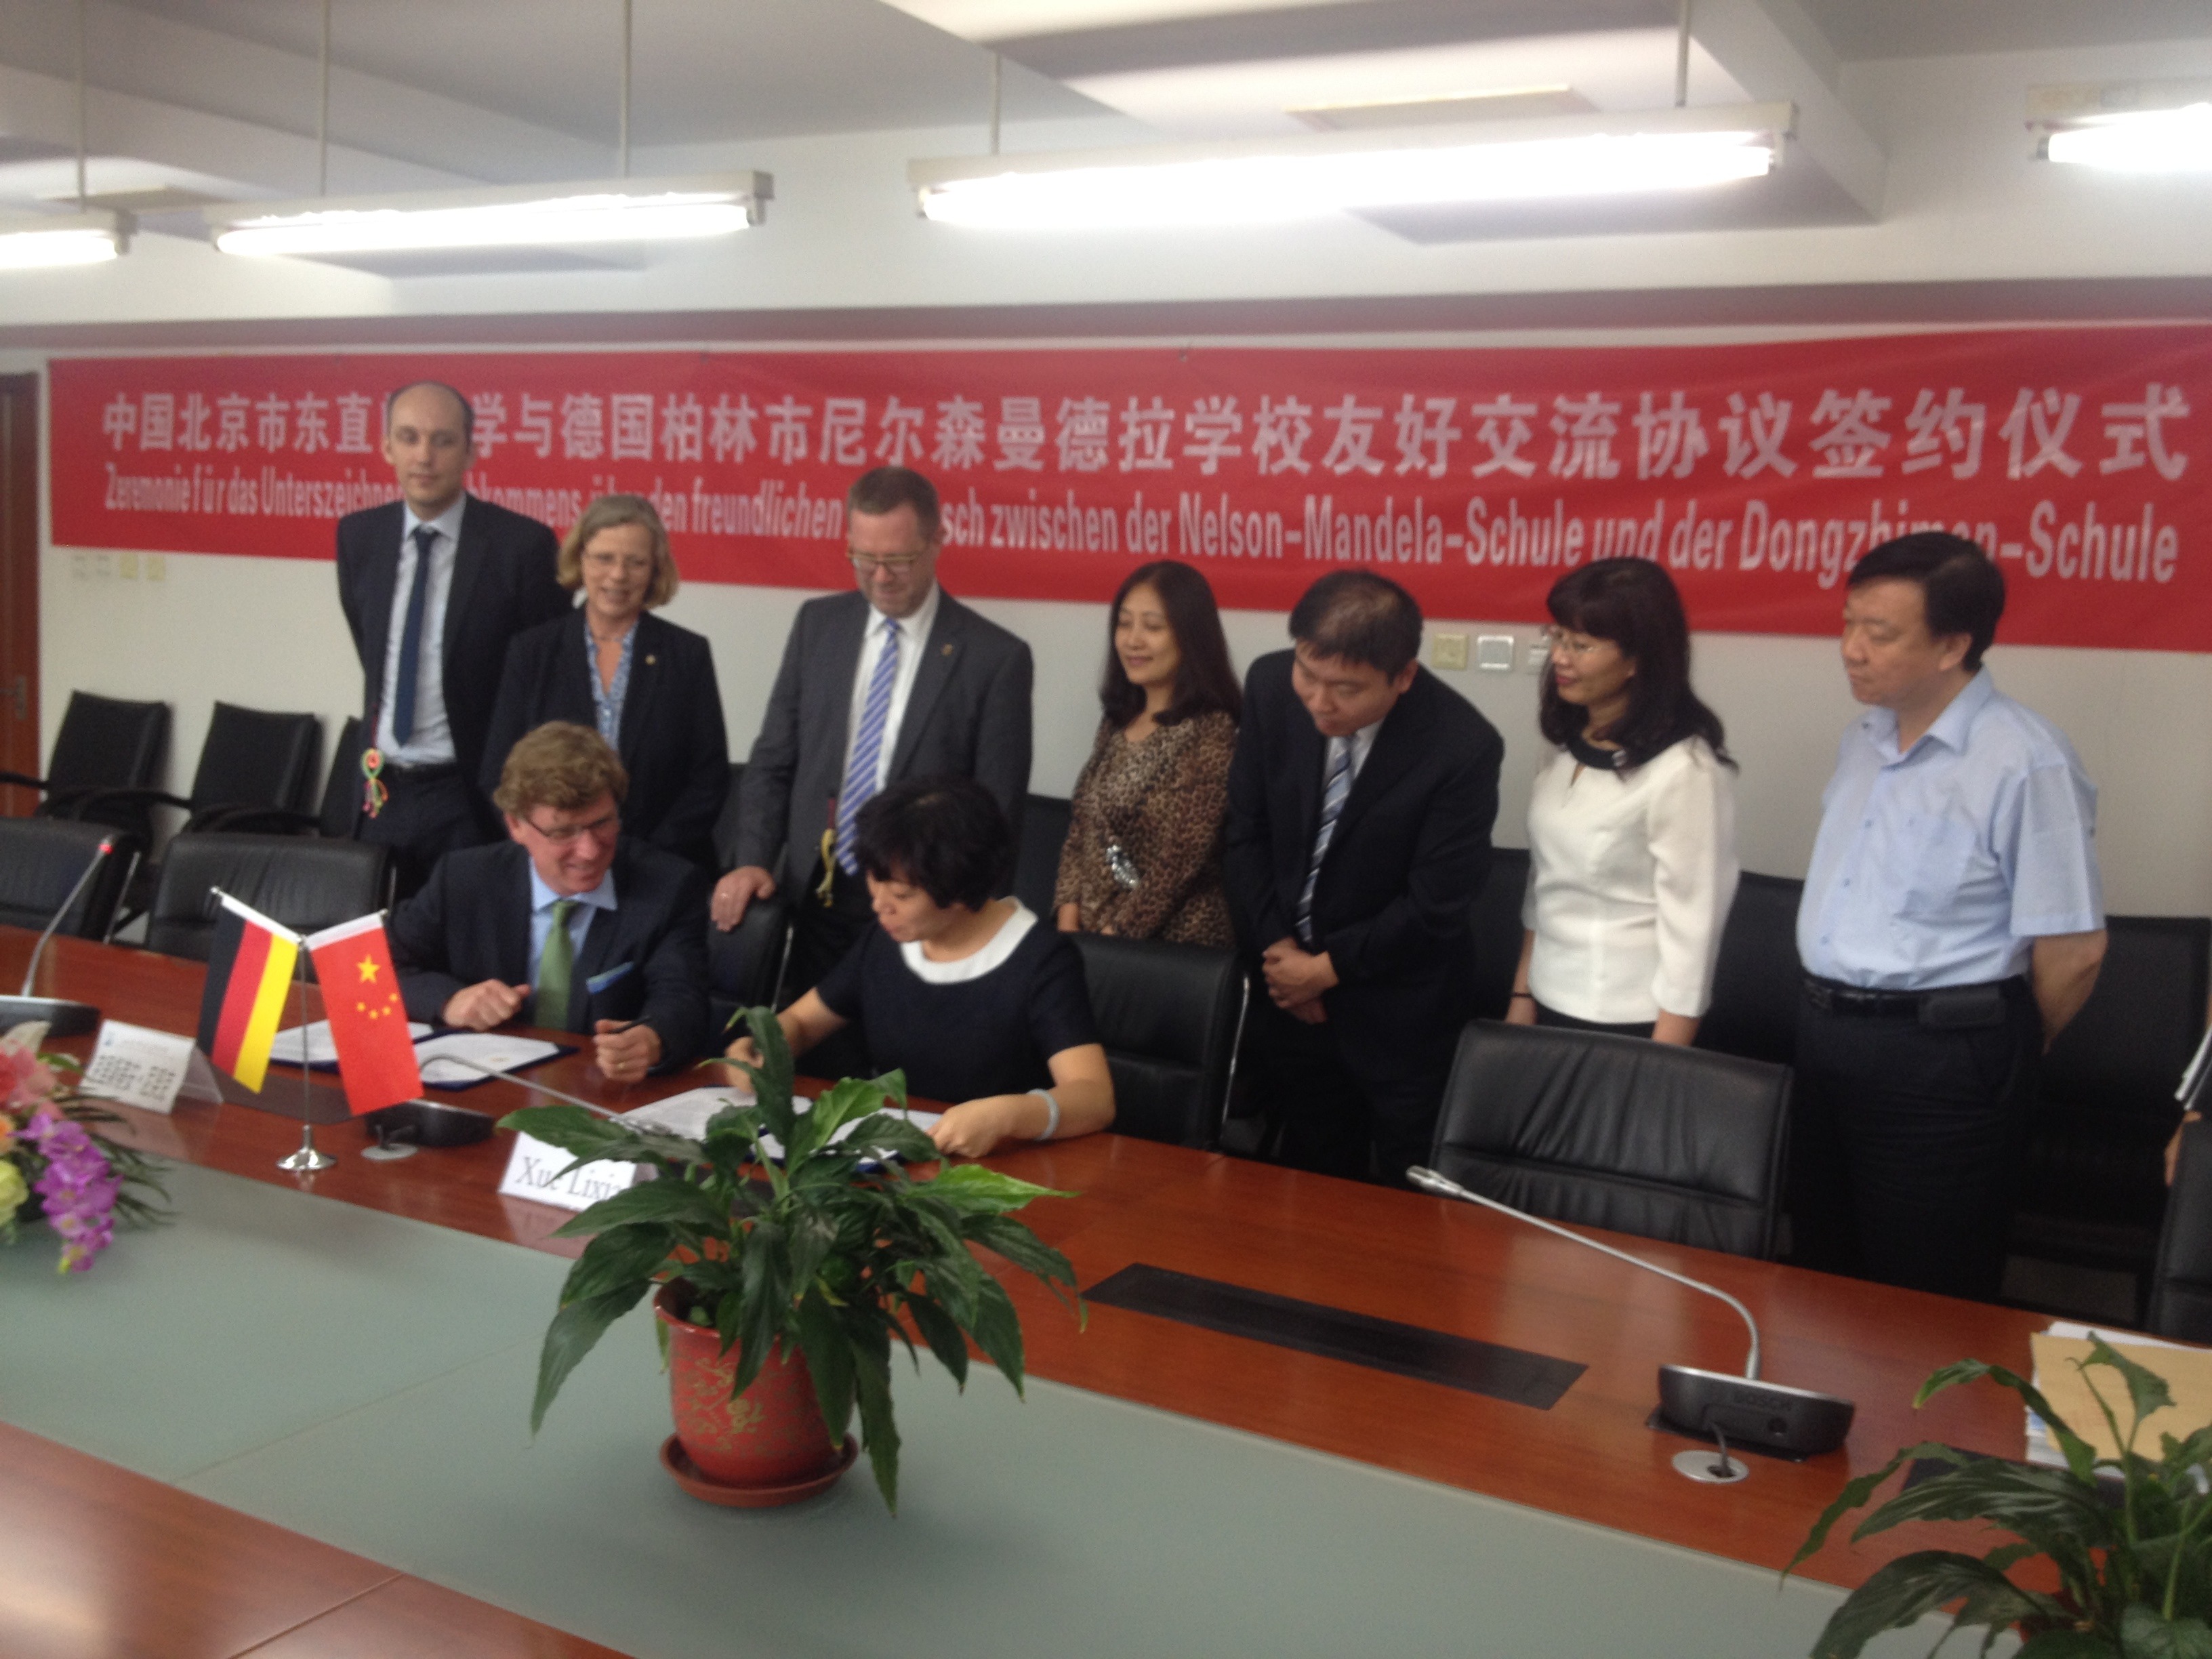 Unterzeichnung eines Freundschaftsvertrages zwischen der Nelson-Mandela-Schule und der Dong Zhimen High School in Peking am 18.9.2014 in Peking